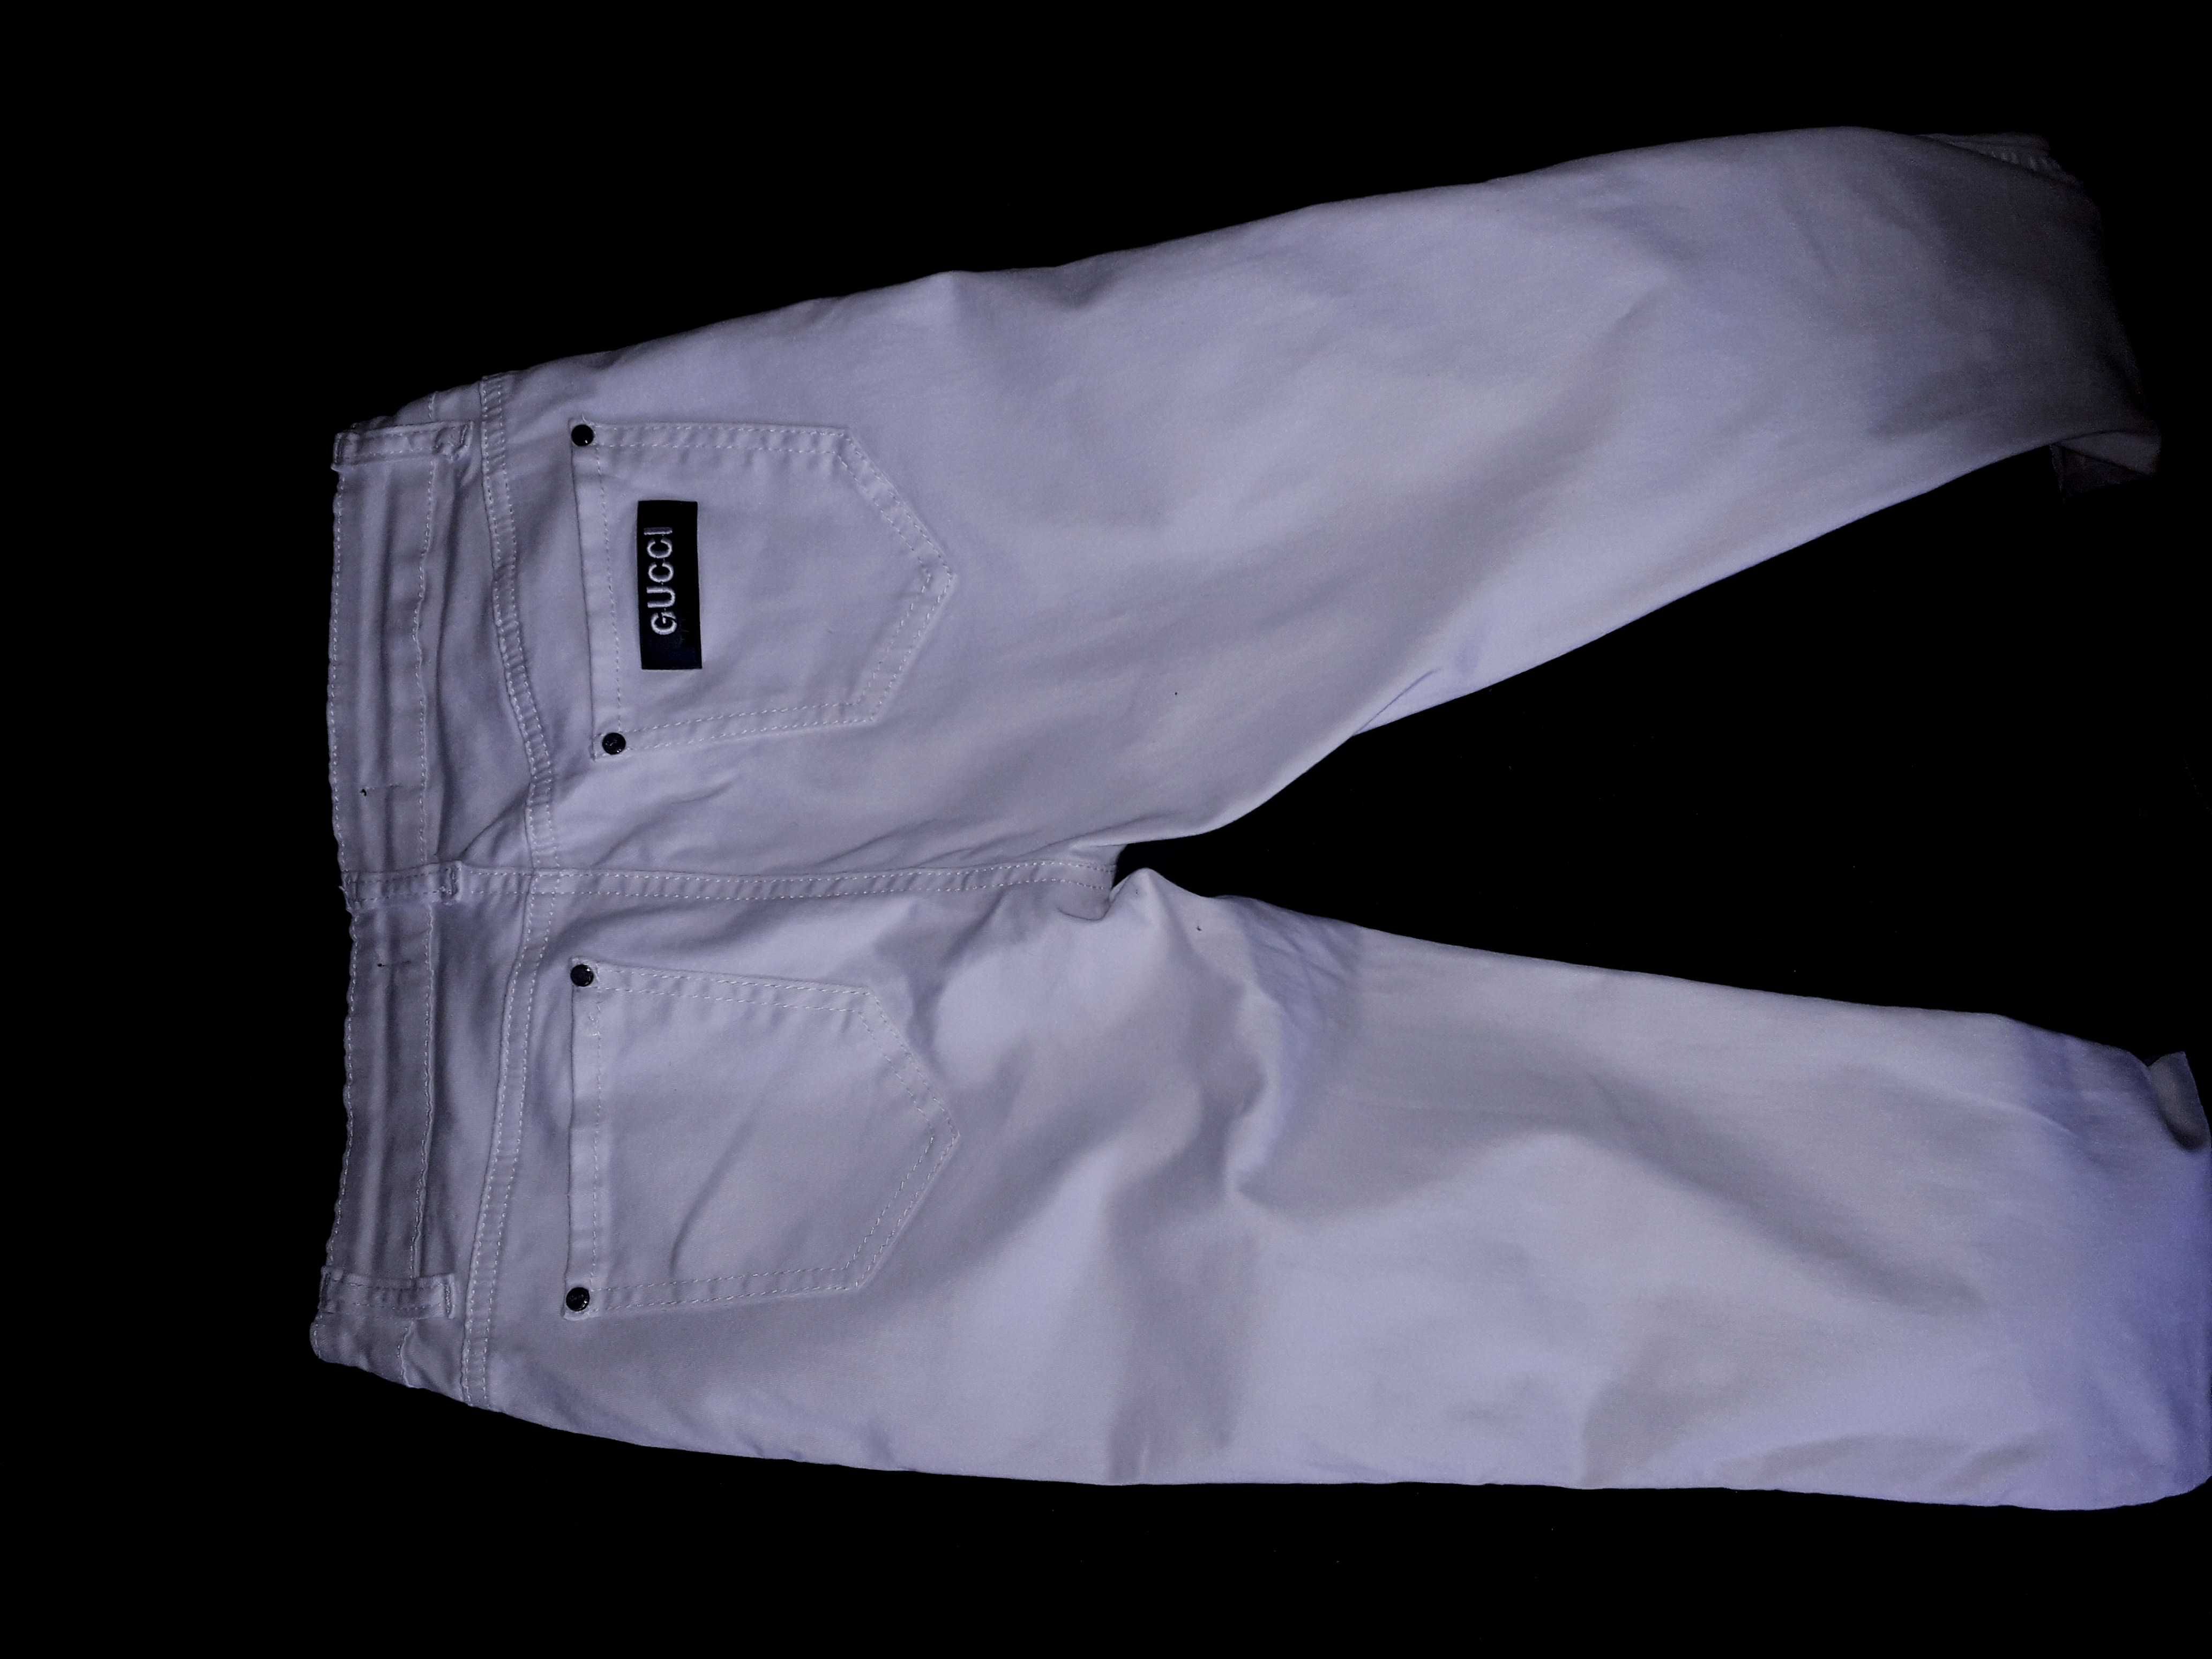 Женские белые джинсы Gucci ( Оригинал)